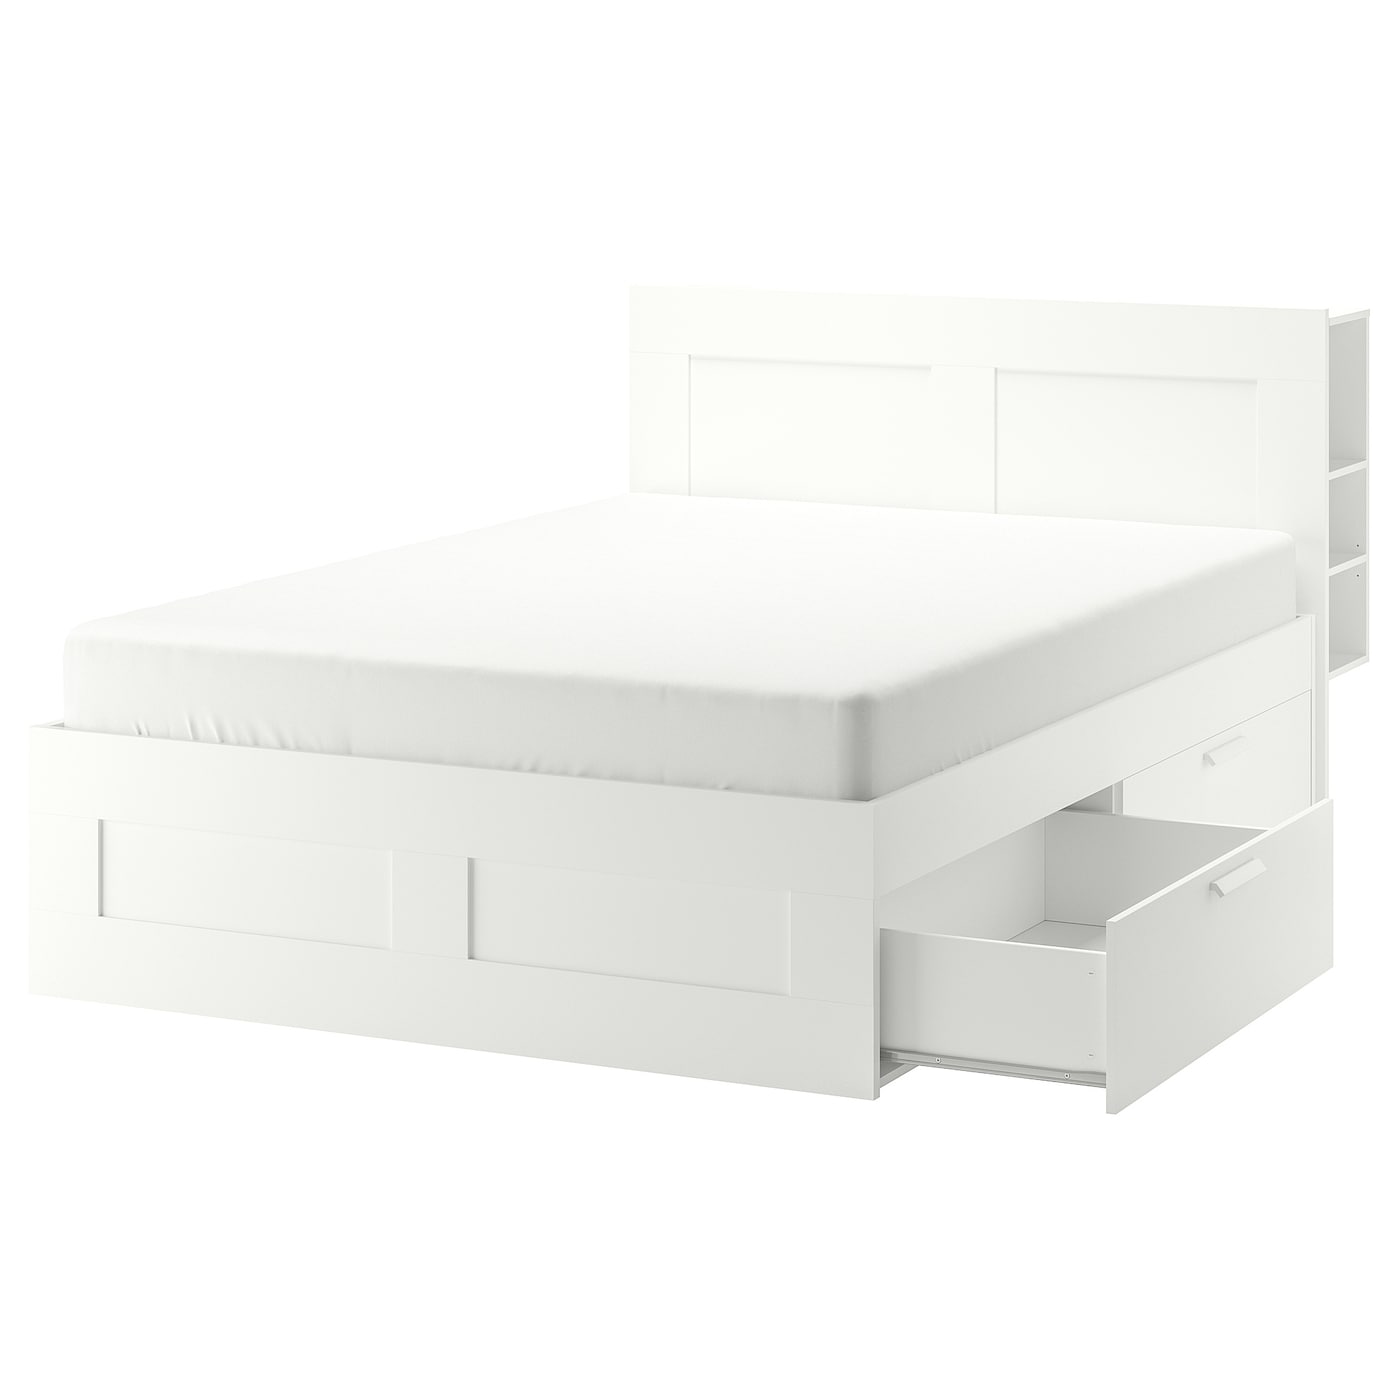 Каркас кровати с изголовьем - IKEA BRIMNES/LINDBÅDEN/LINDBADEN, 140х200 см, белый, БРИМНЭС/БРИМНЕС/ЛИНДБАДЕН ИКЕА